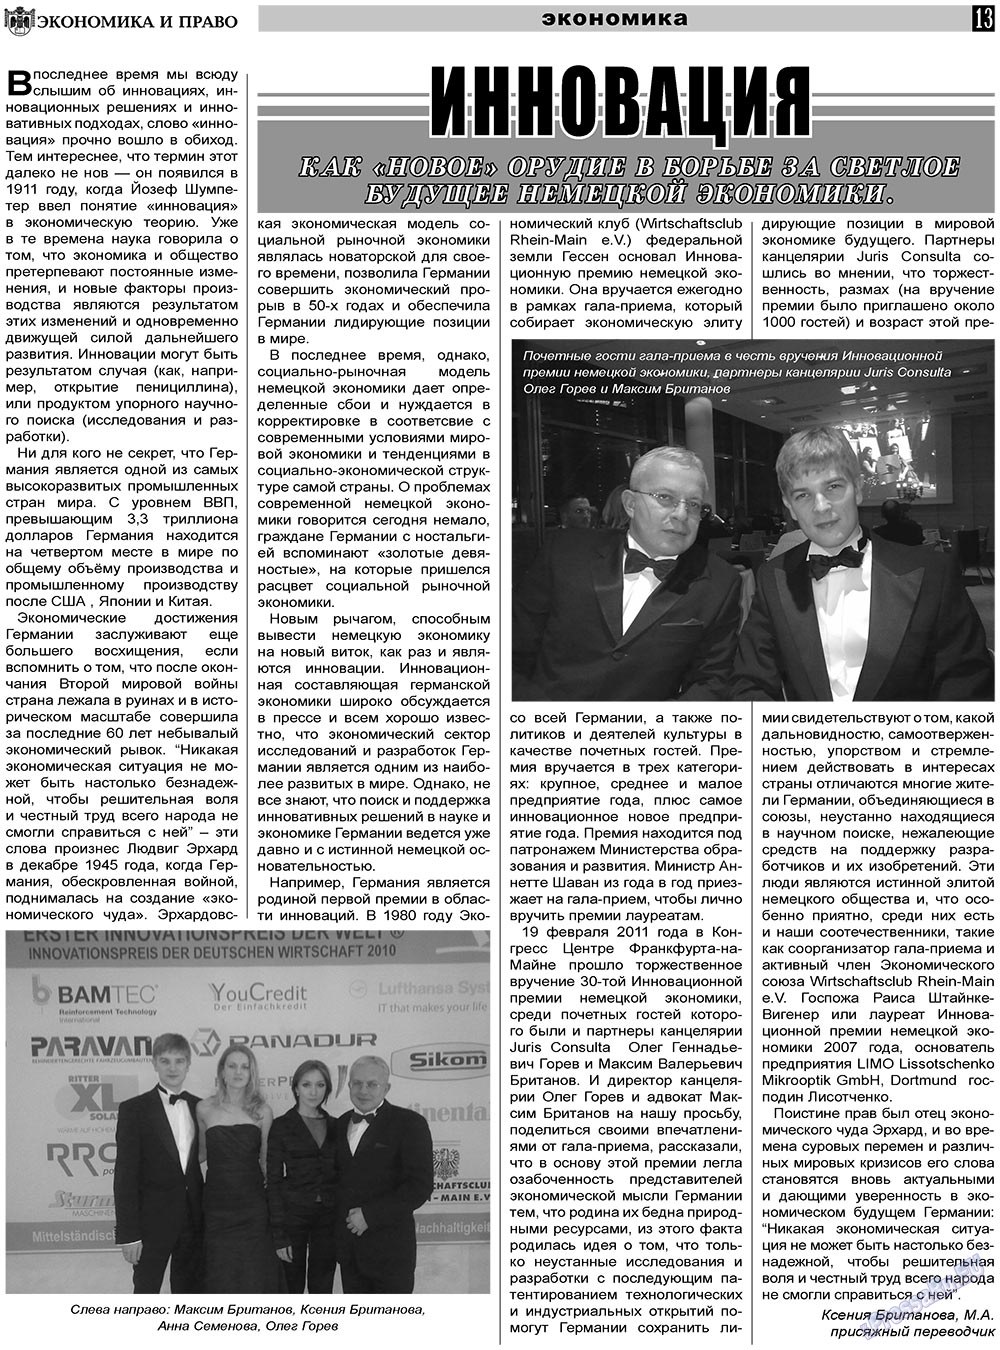 Экономика и право, газета. 2011 №3 стр.13